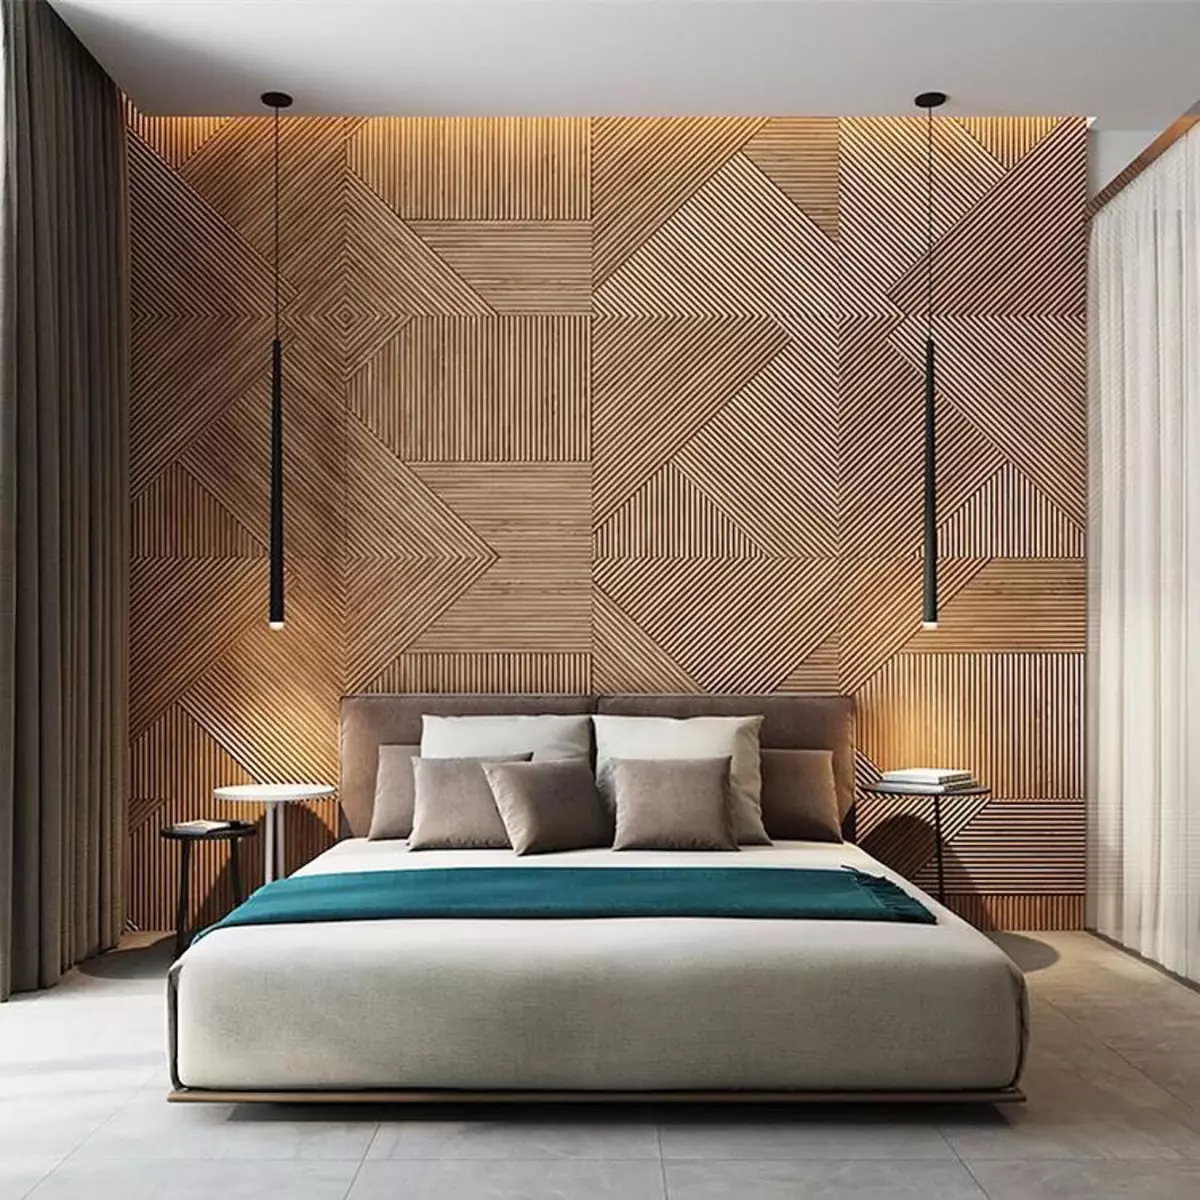 Pannelli in legno realizzati in legno naturale per la decorazione della parete nell'arredamento degli interni design